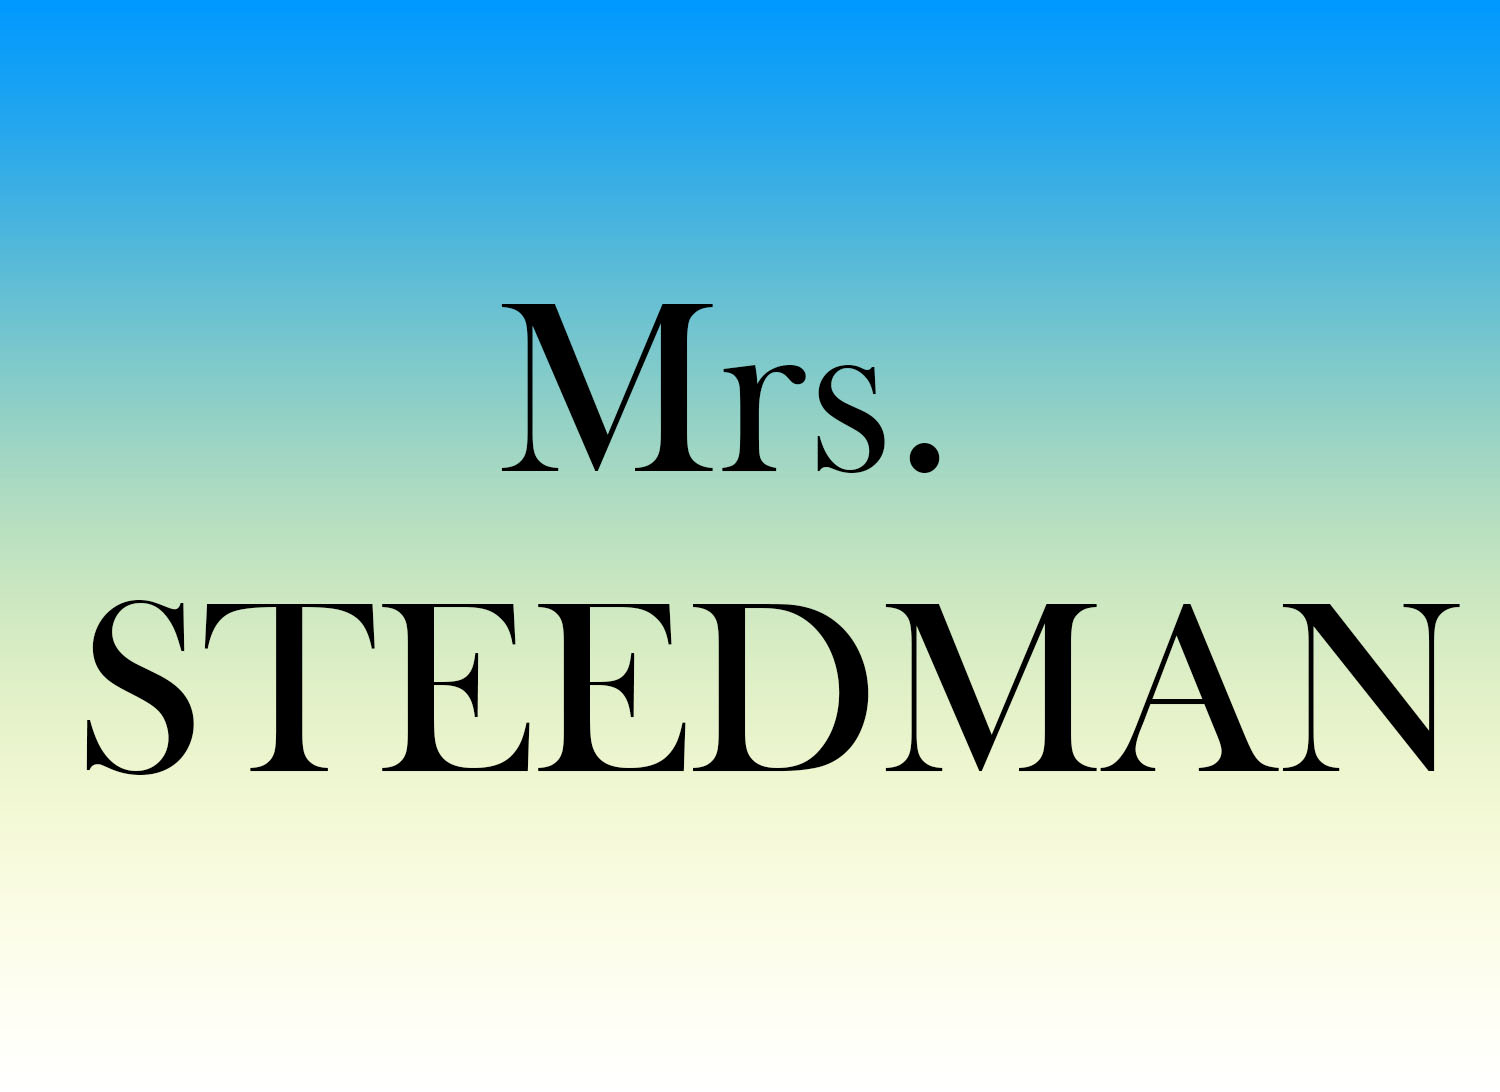 steedman